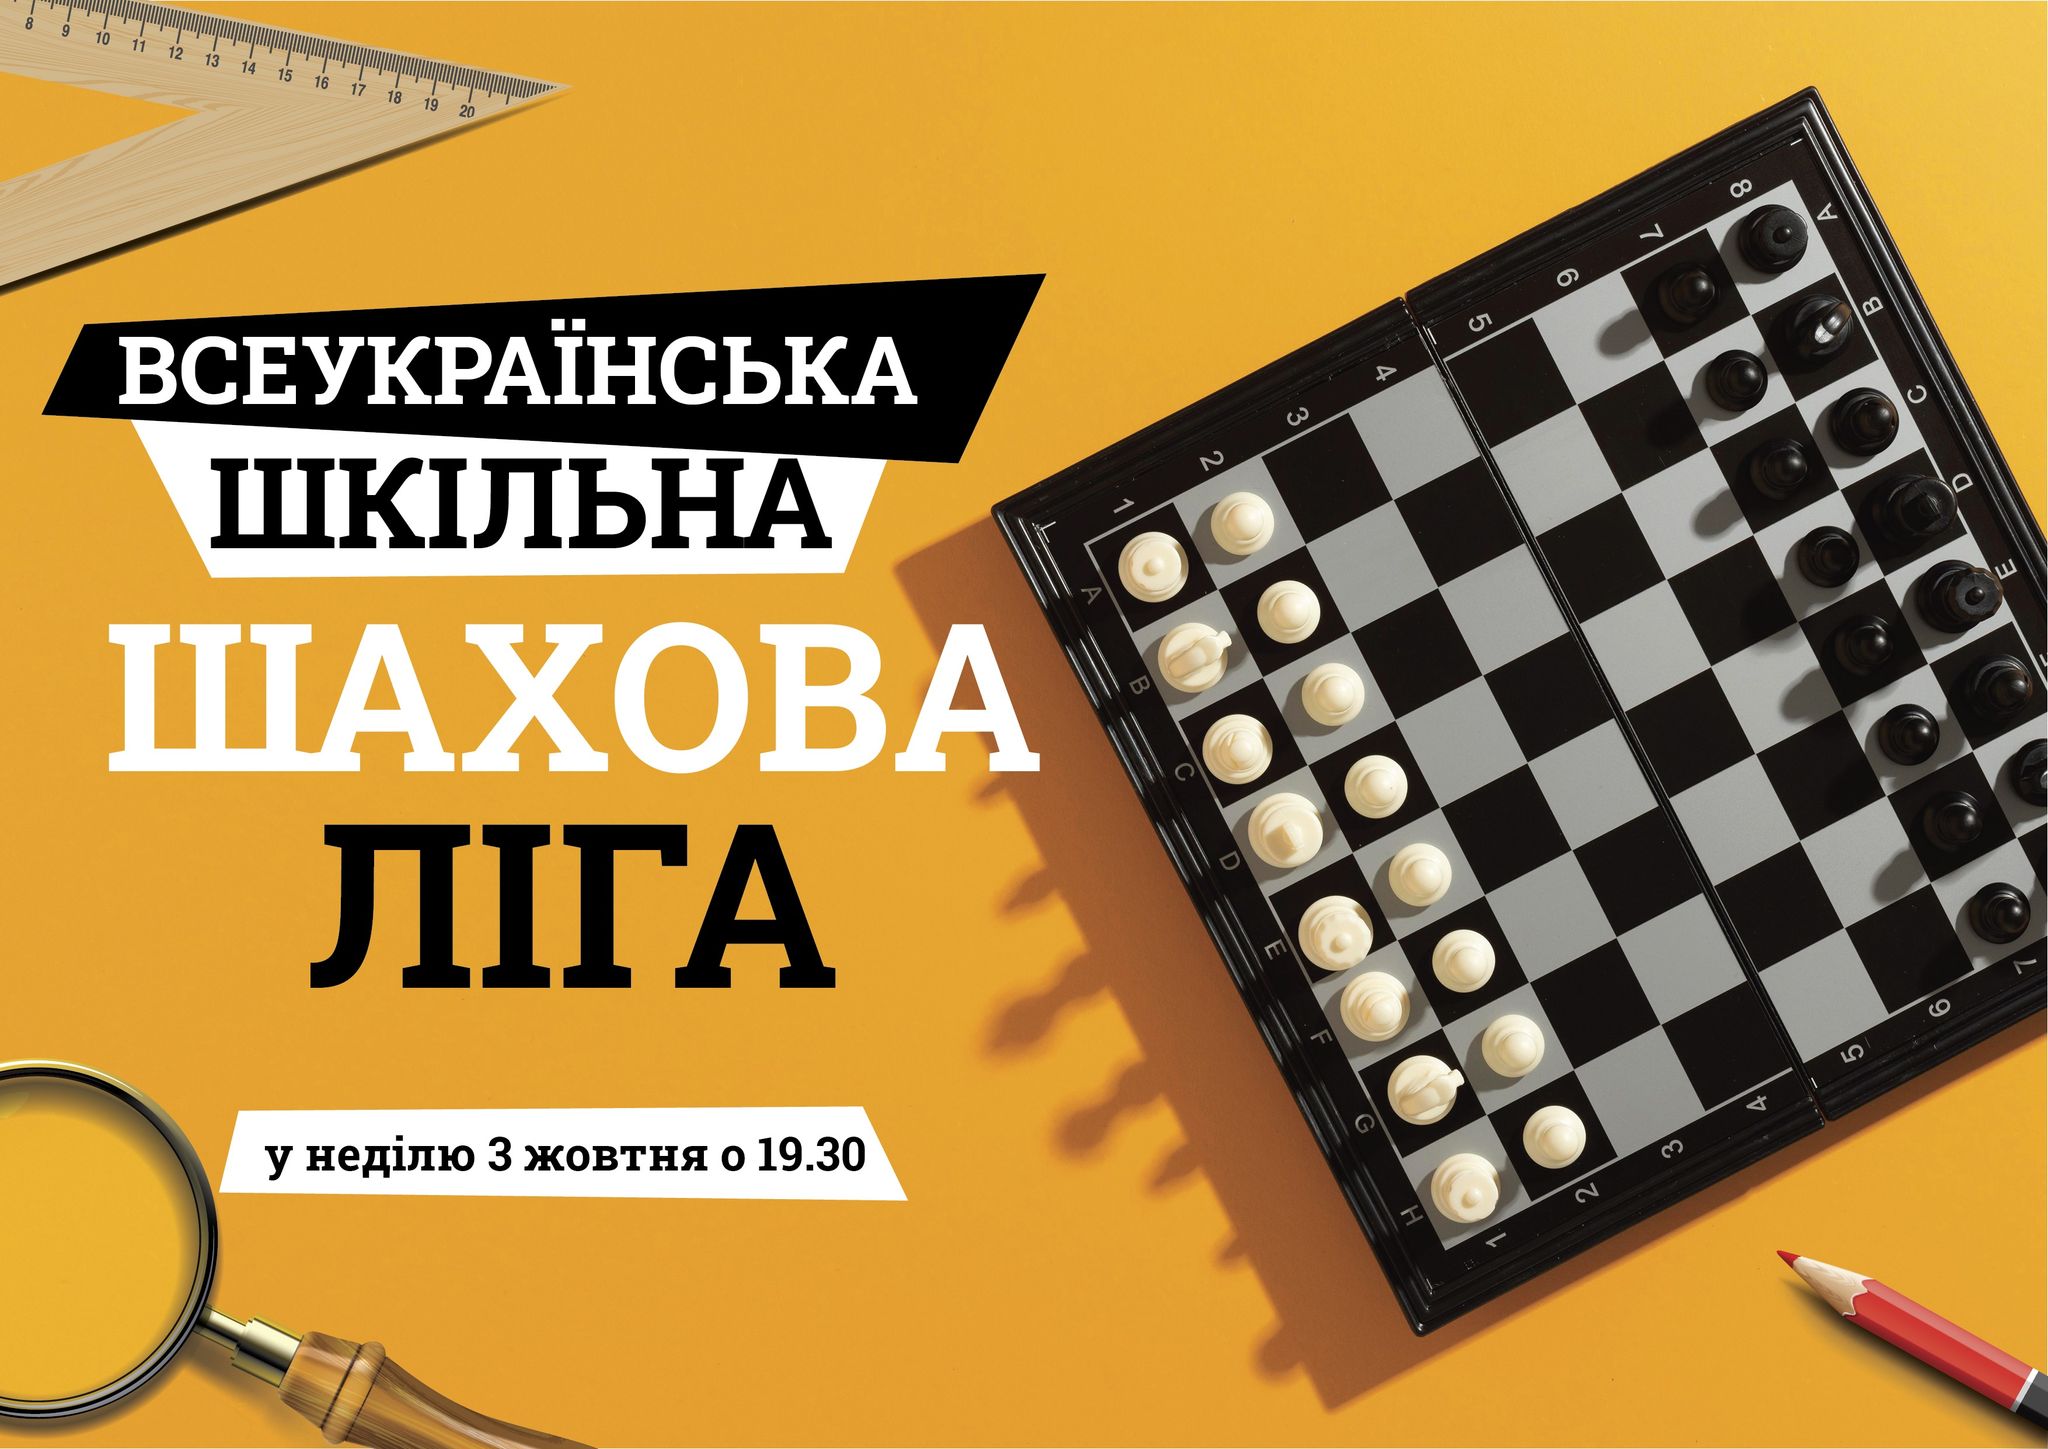 Трегі змагання другого шахового року 2021/22 «Всеукраїнська шкільна шахова ліга» (сезон жовтень-грудень 2021 г.)